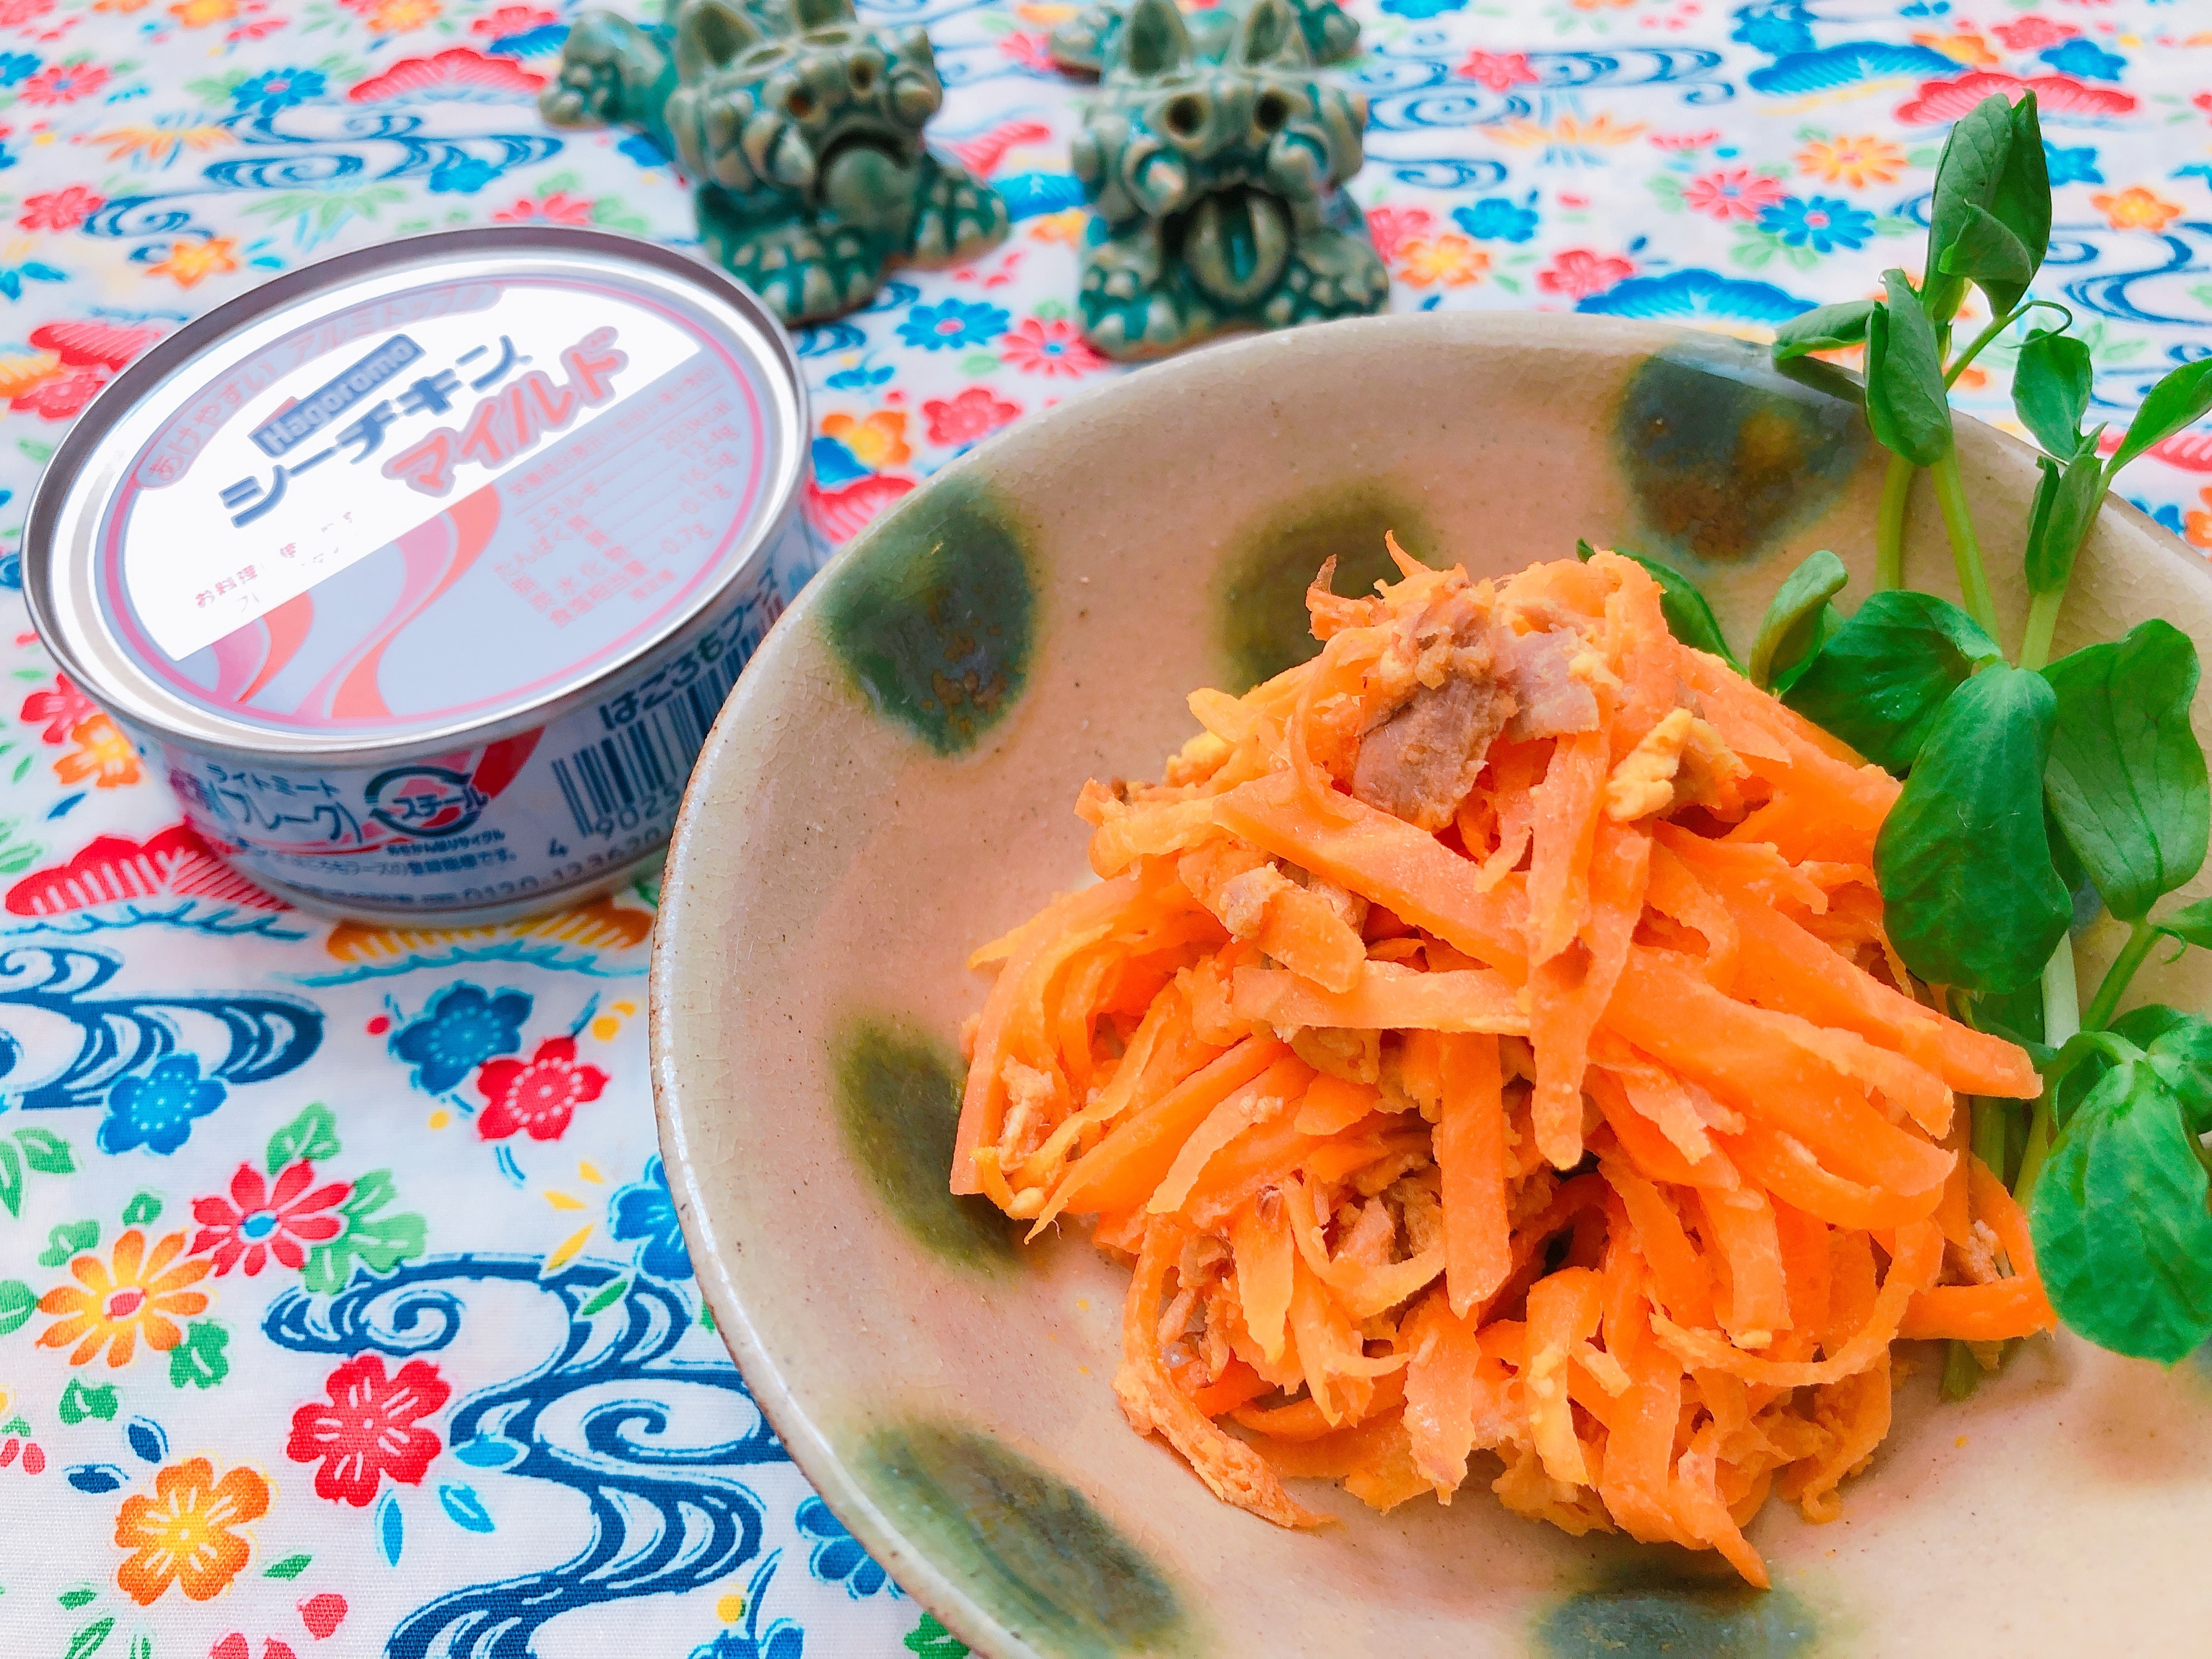 ツナ缶を使った沖縄料理「にんじんしりしり」免疫力や美肌にも!